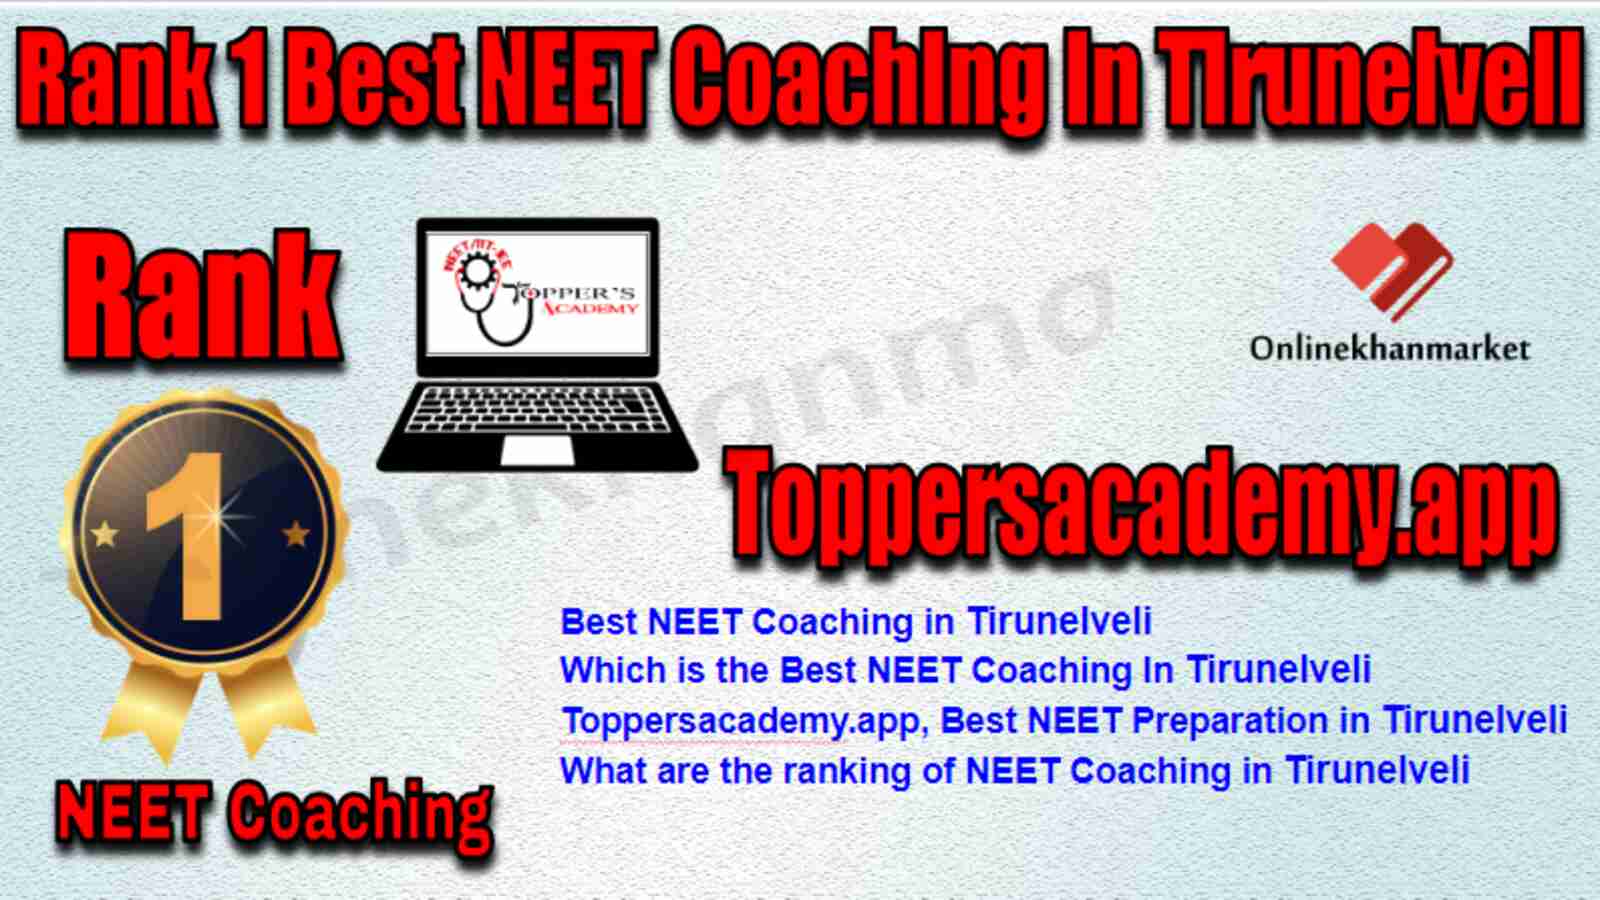 Rank 1 Best NEET Coaching in Tirunelveli